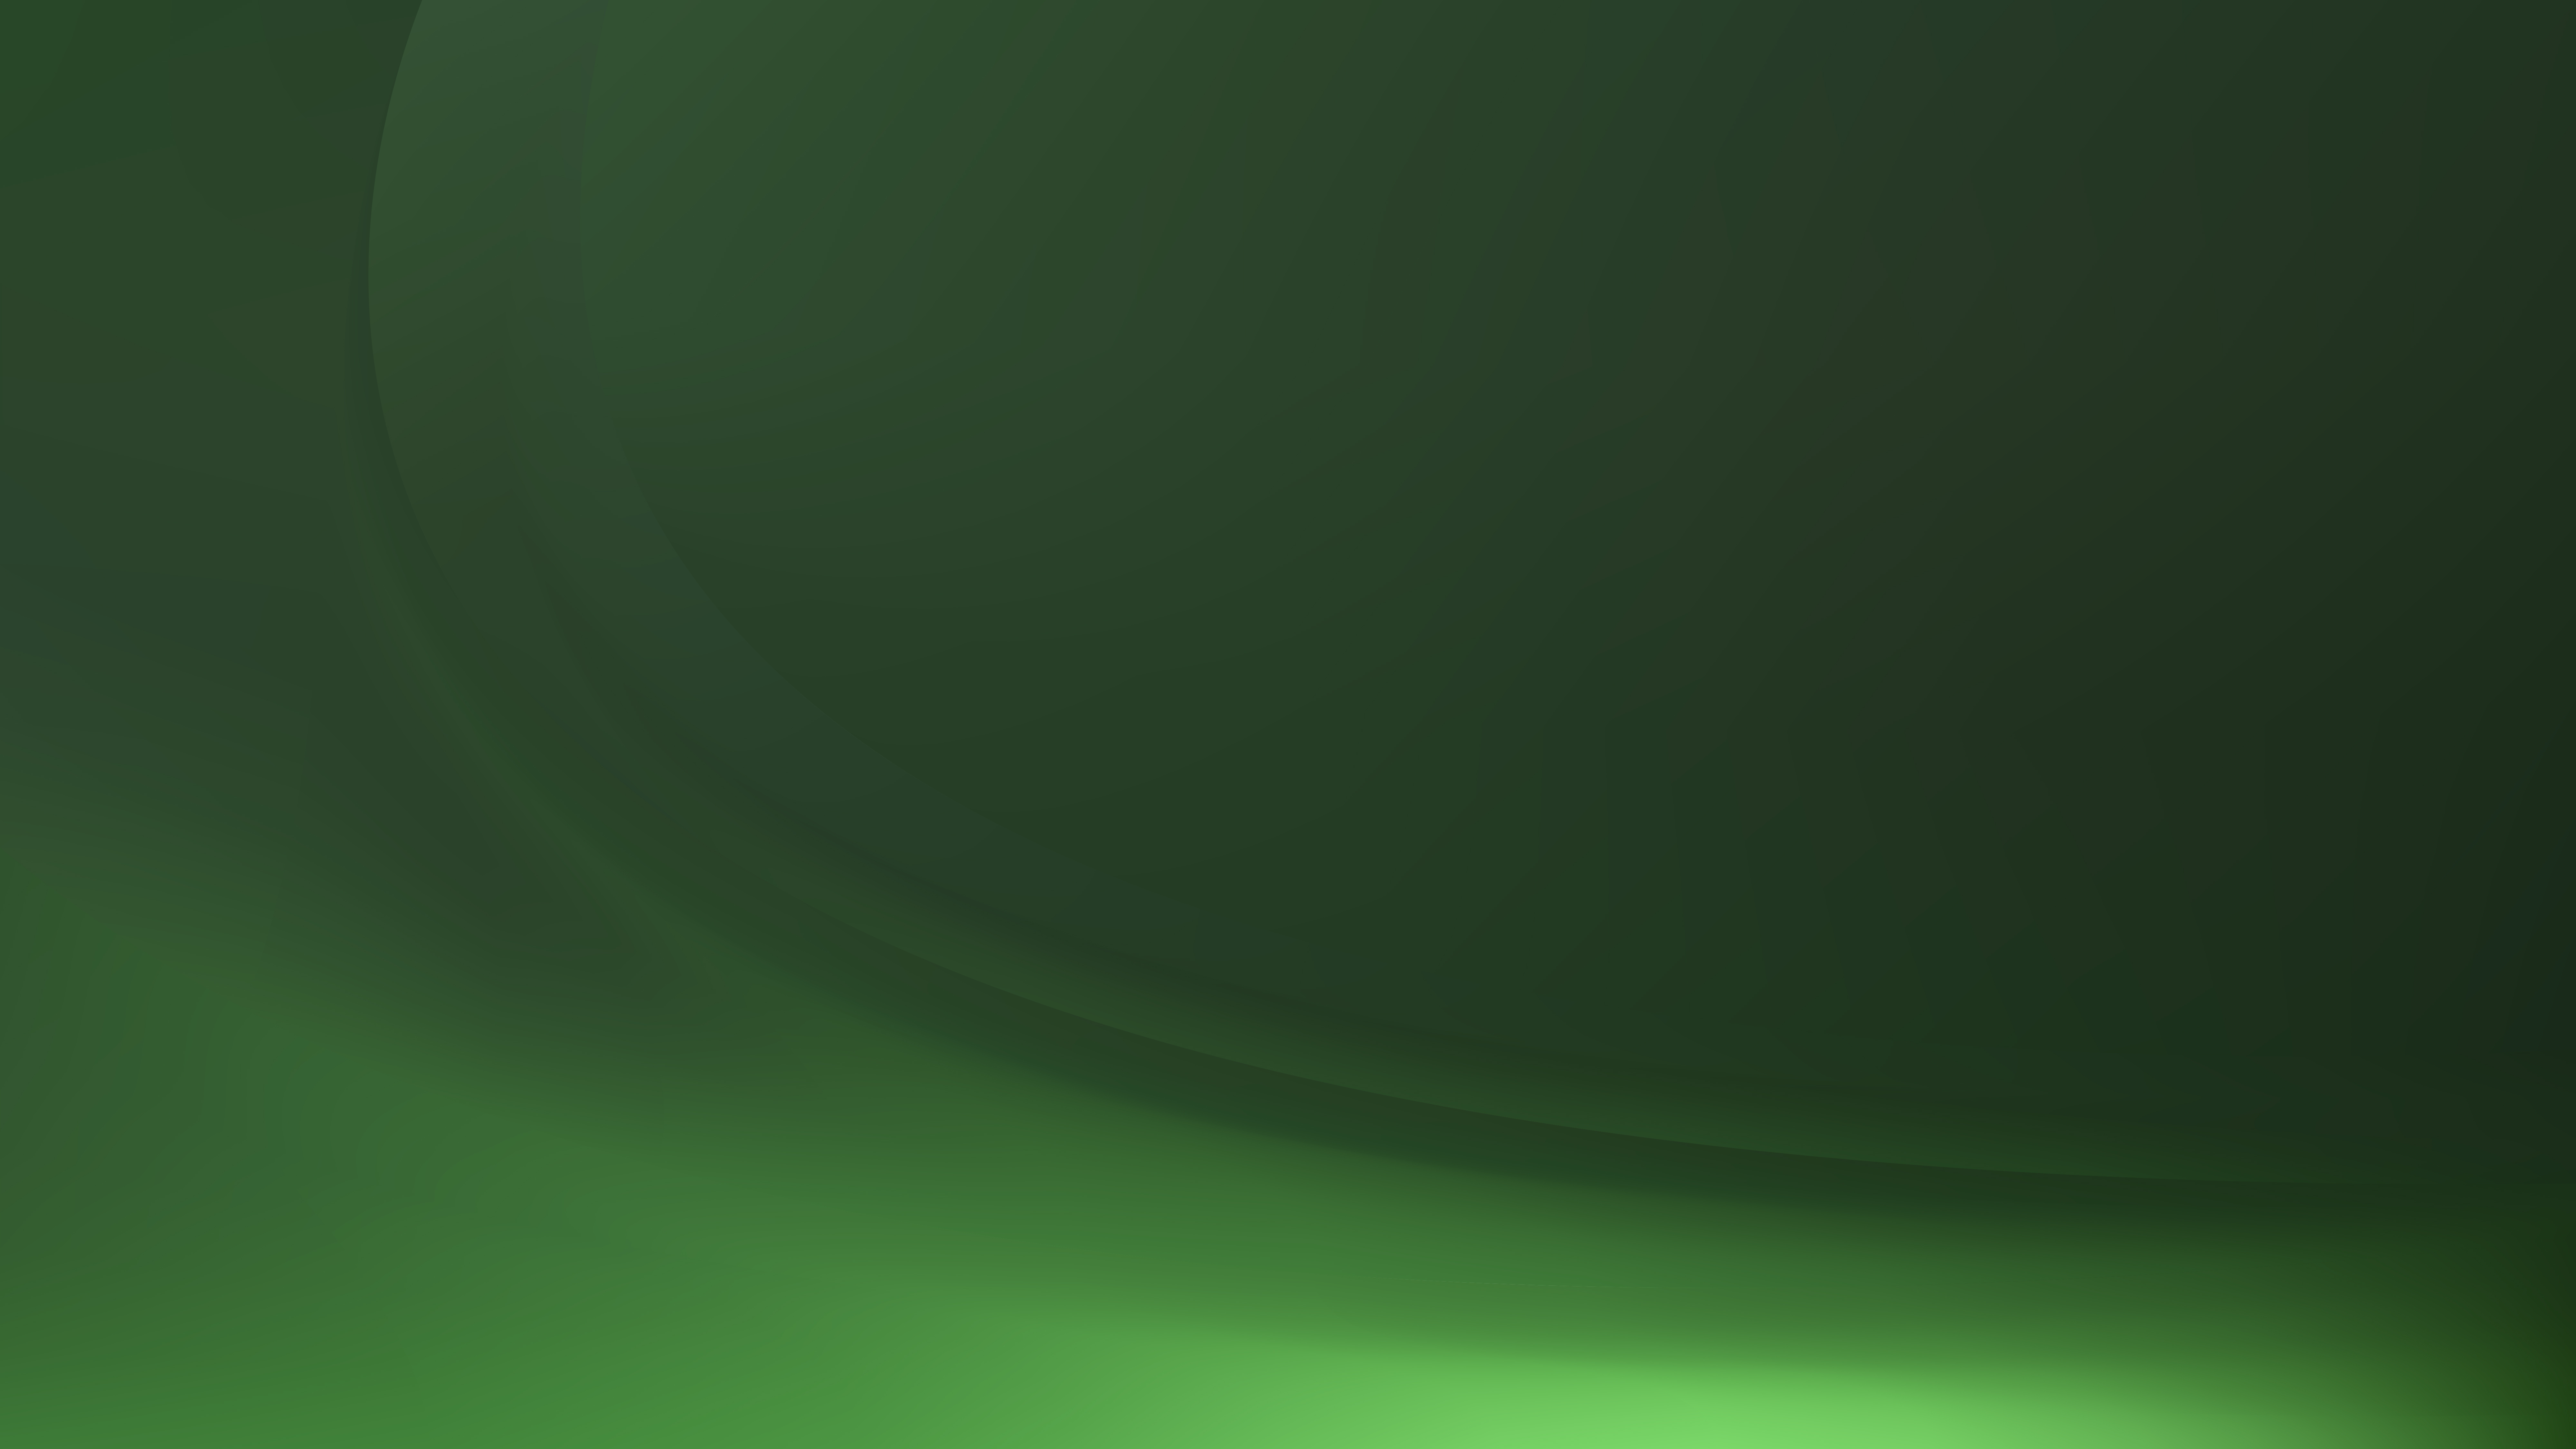 Free Dark Green Wave Background Template